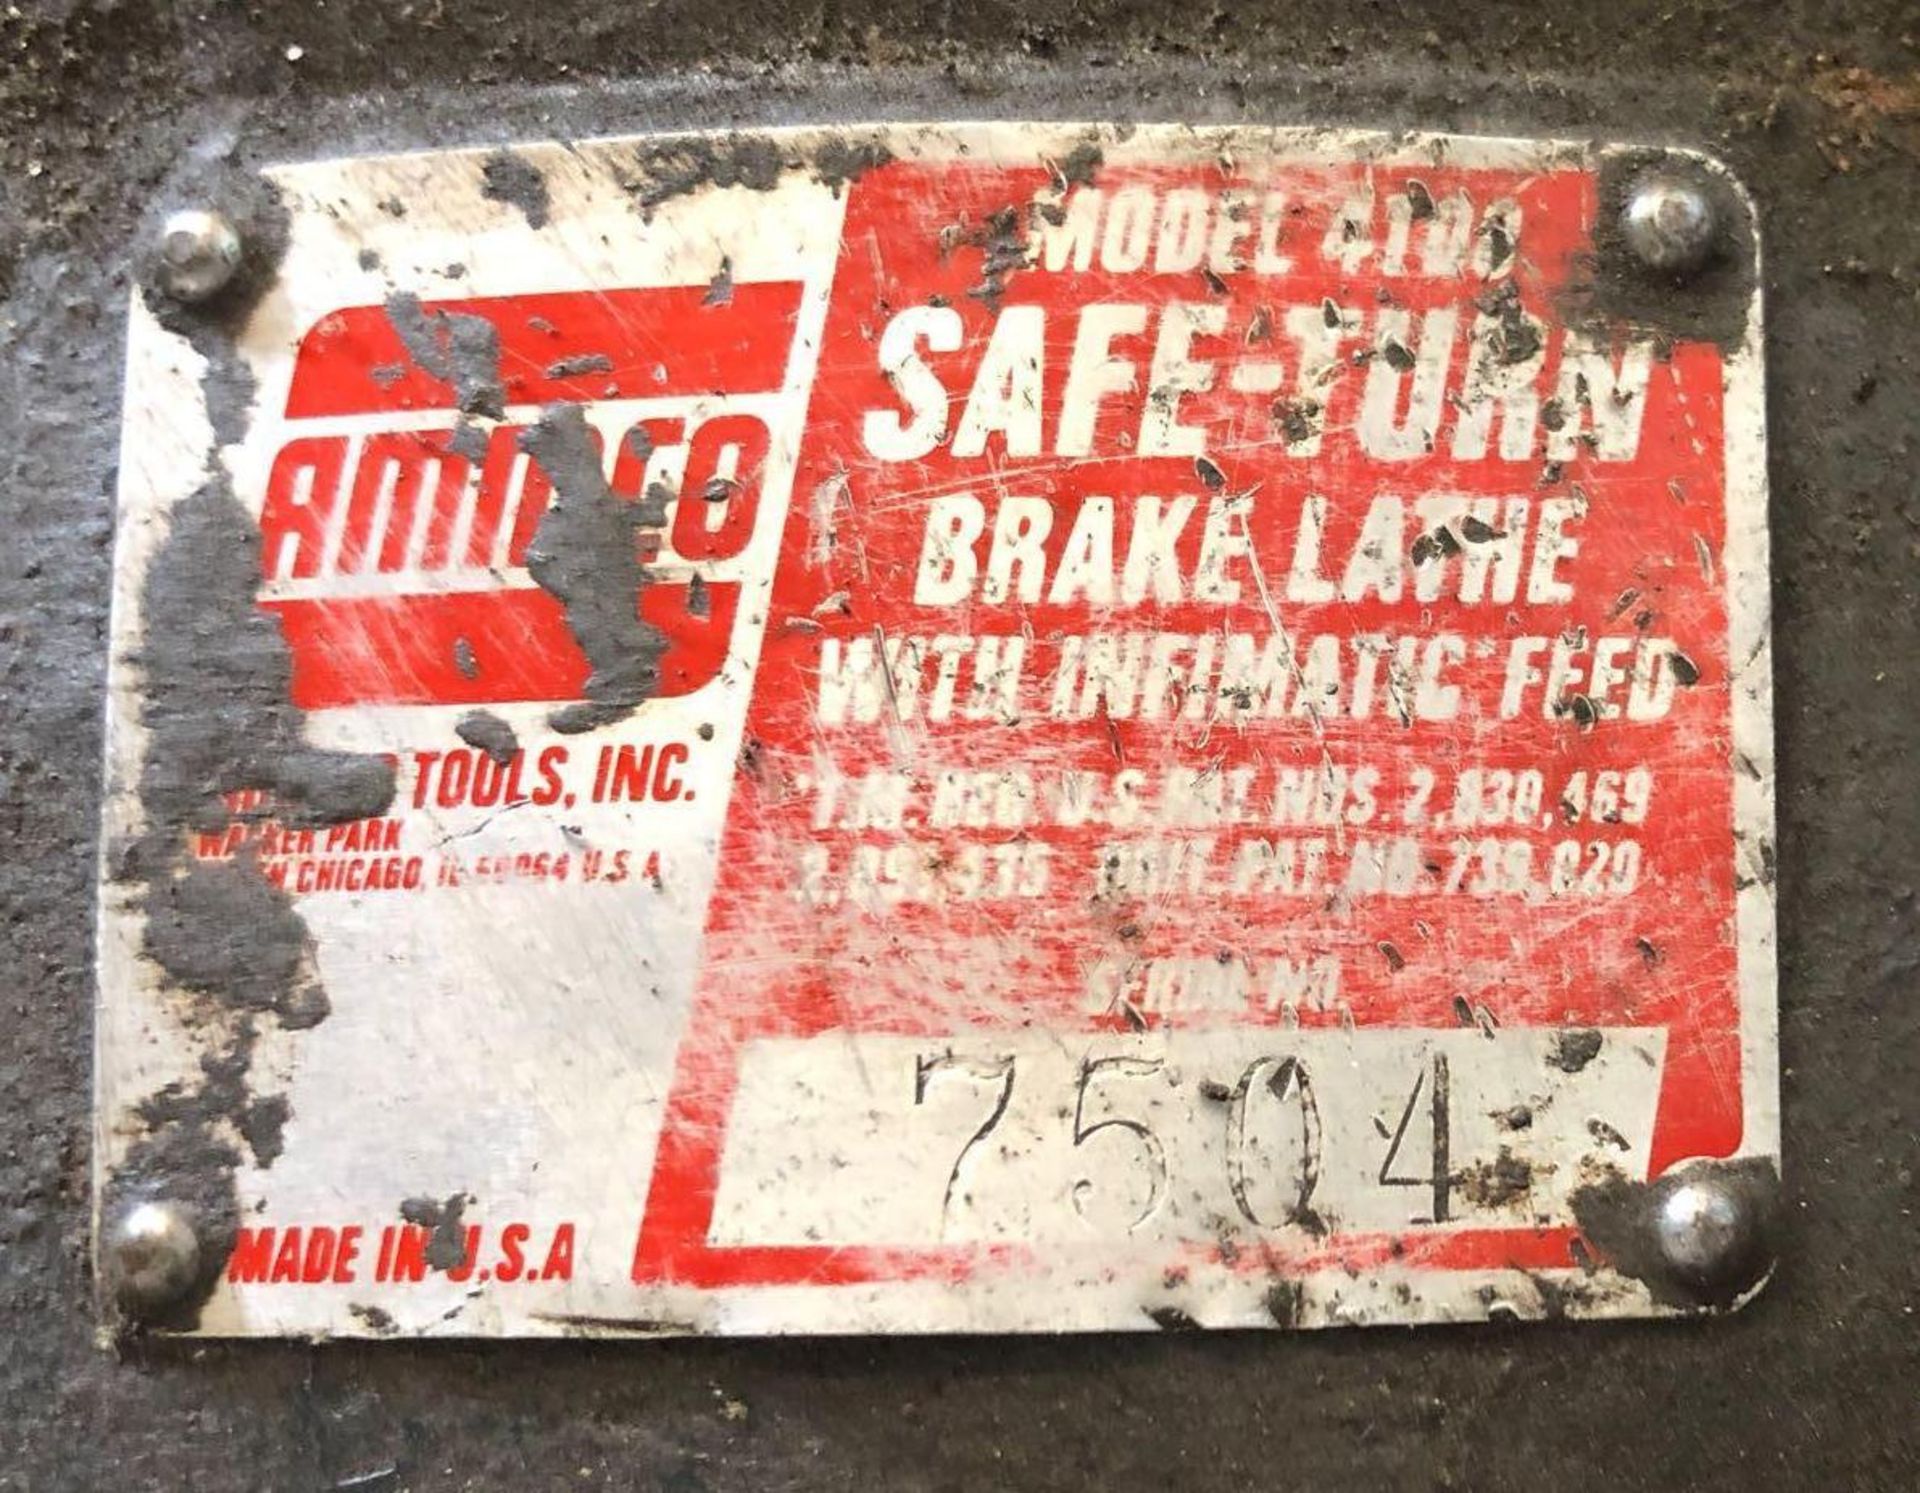 AMMCO 4100 Brake Lathe - Image 7 of 7